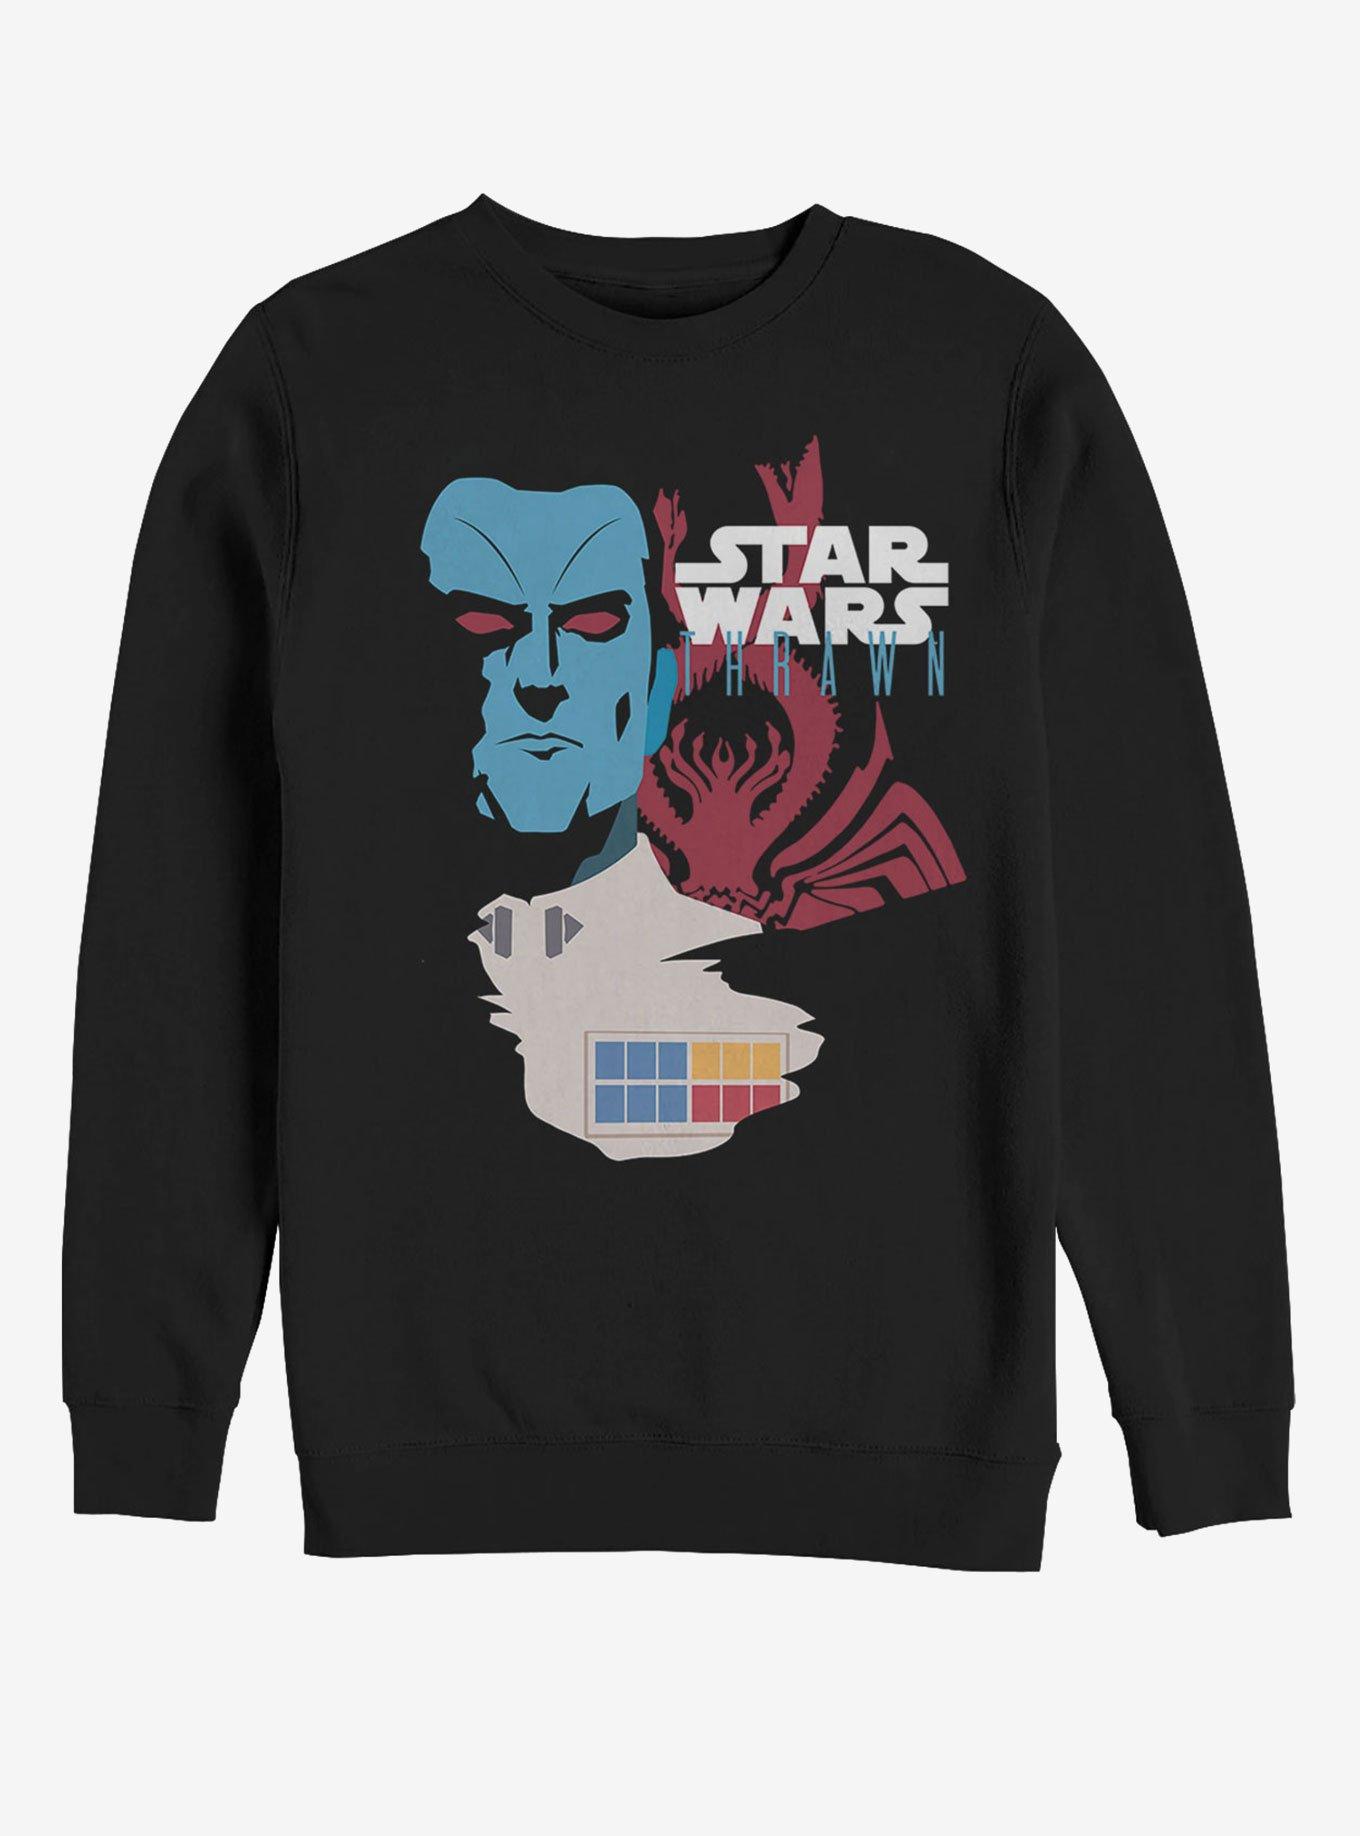 Star Wars Grand Admiral Thrawn Sweatshirt